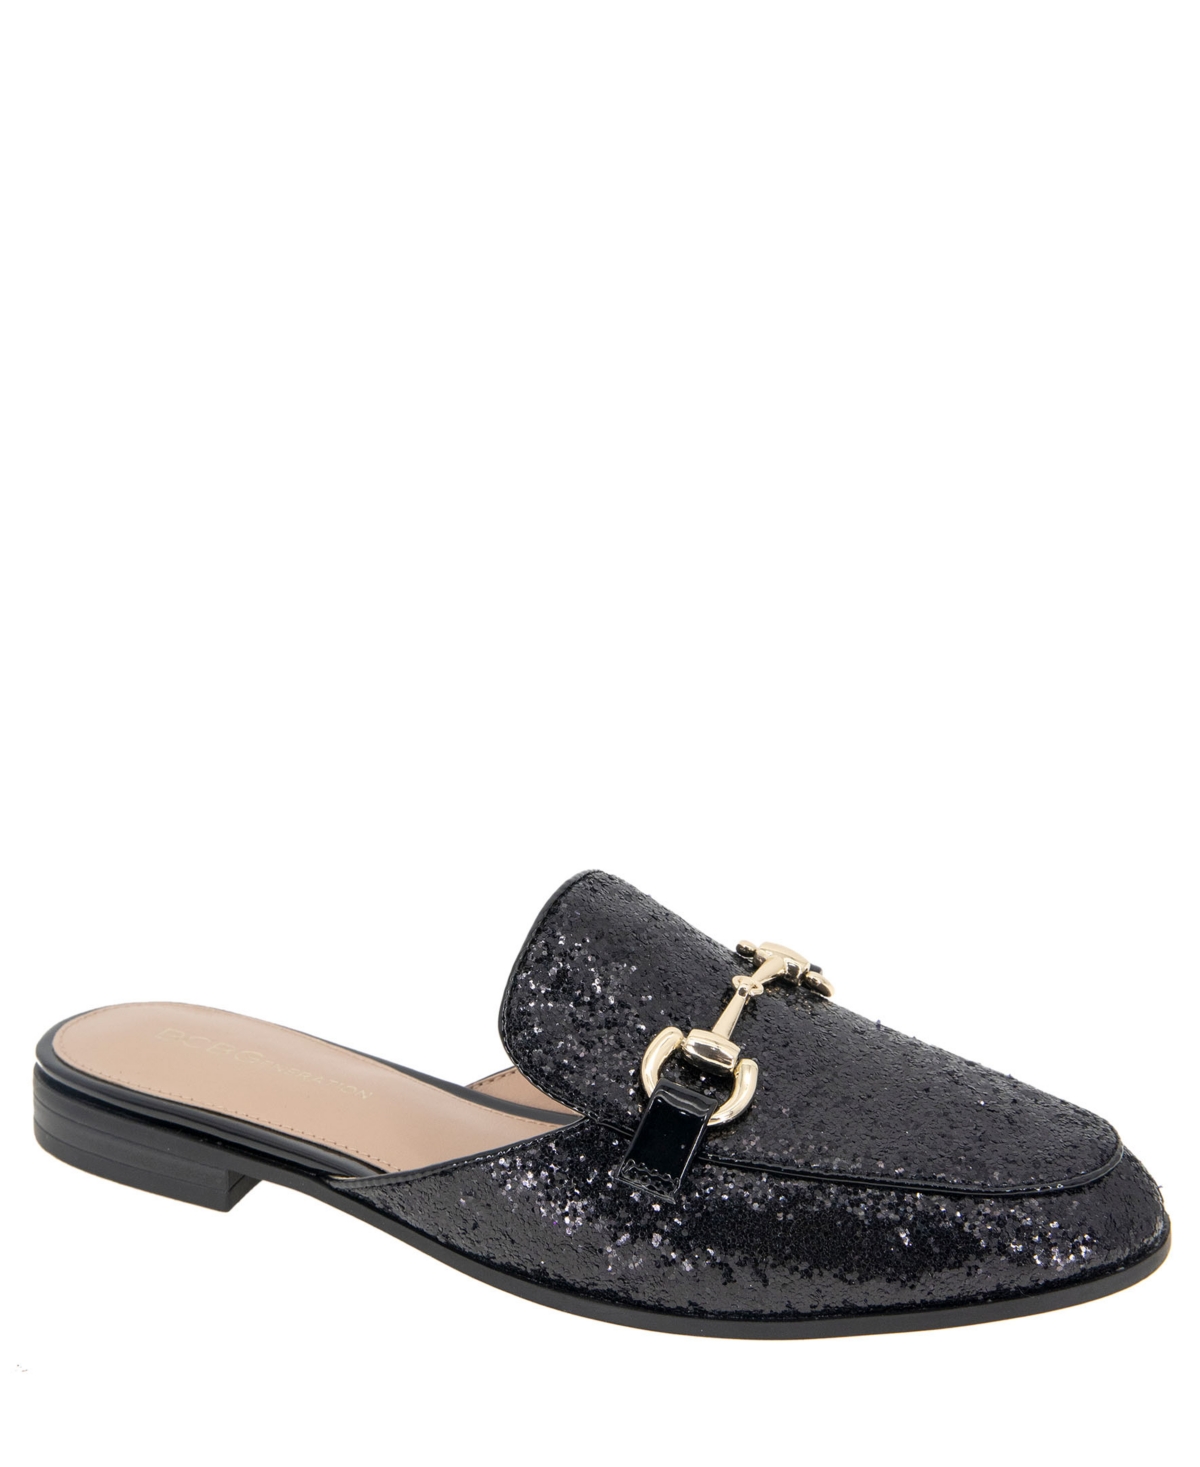 Women's Zorie Tailored Slip-On Loafer Mules - Black Rock Glitter